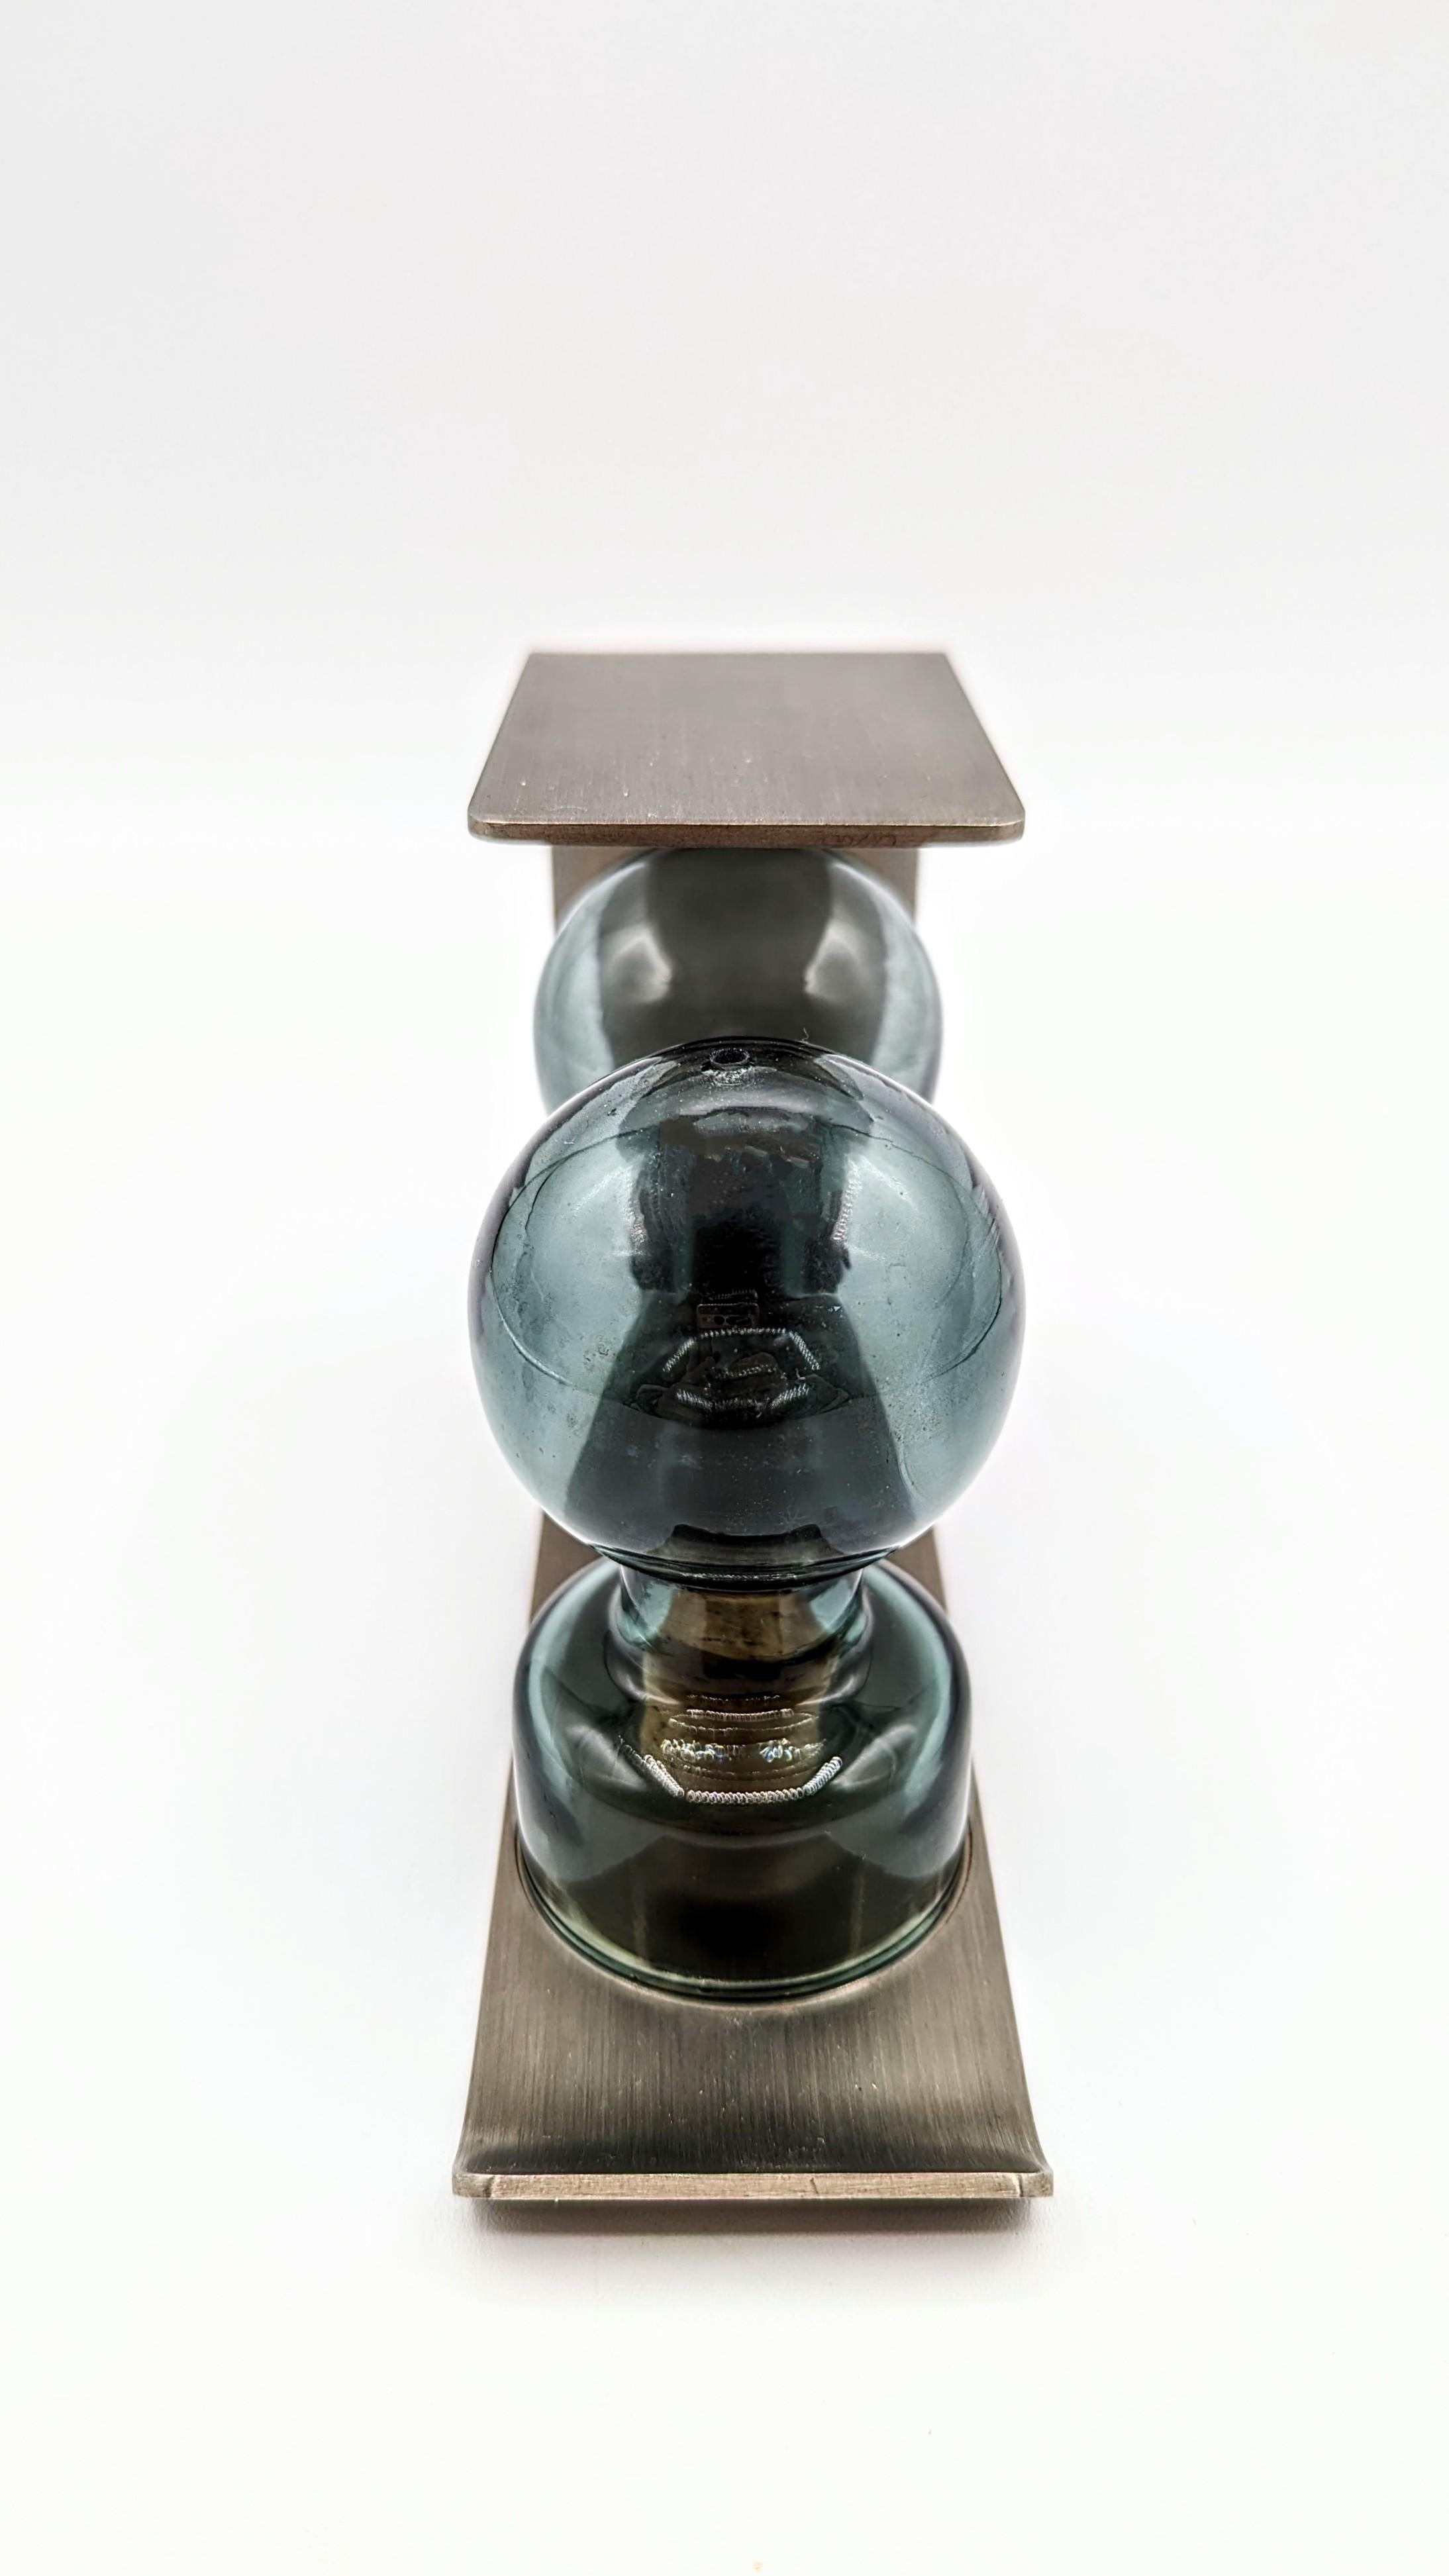 Seltenes und schönes Salz- und Pfefferset von François Monnet für Kappa, hergestellt in Frankreich in den 1970er Jahren. Brush Aluminium-Struktur mit 2 handgefertigten Flaschen in einem unglaublichen blau-grau geräuchertes Glas. Ein sehr schönes